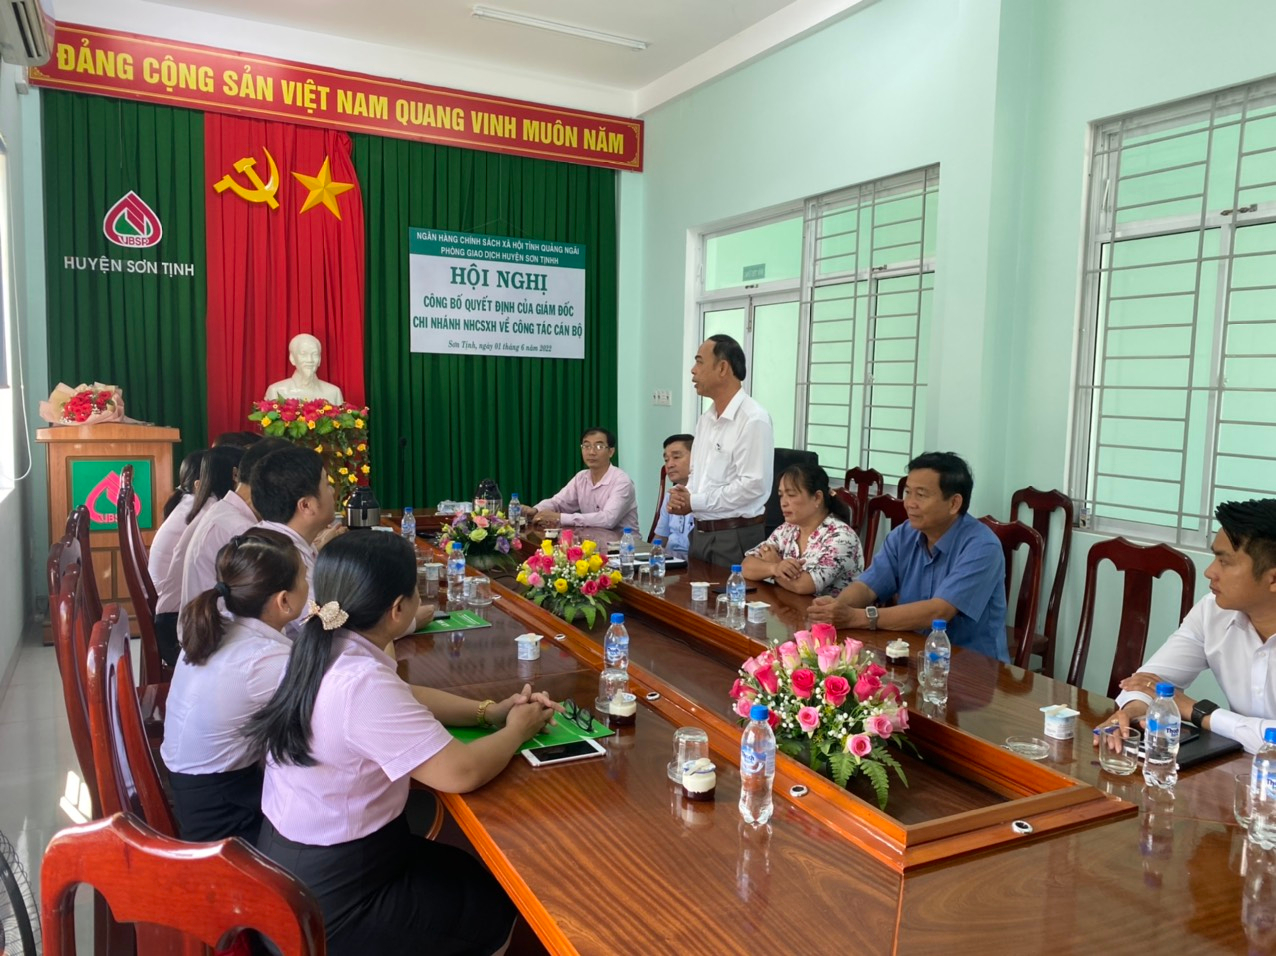 Ngân hàng Chính sách xã hội tỉnh Quảng Ngãi tổ chức Hội nghị công bố các Quyết định về công tác cán bộ tại Phòng giao dịch huyện Sơn Tịnh.